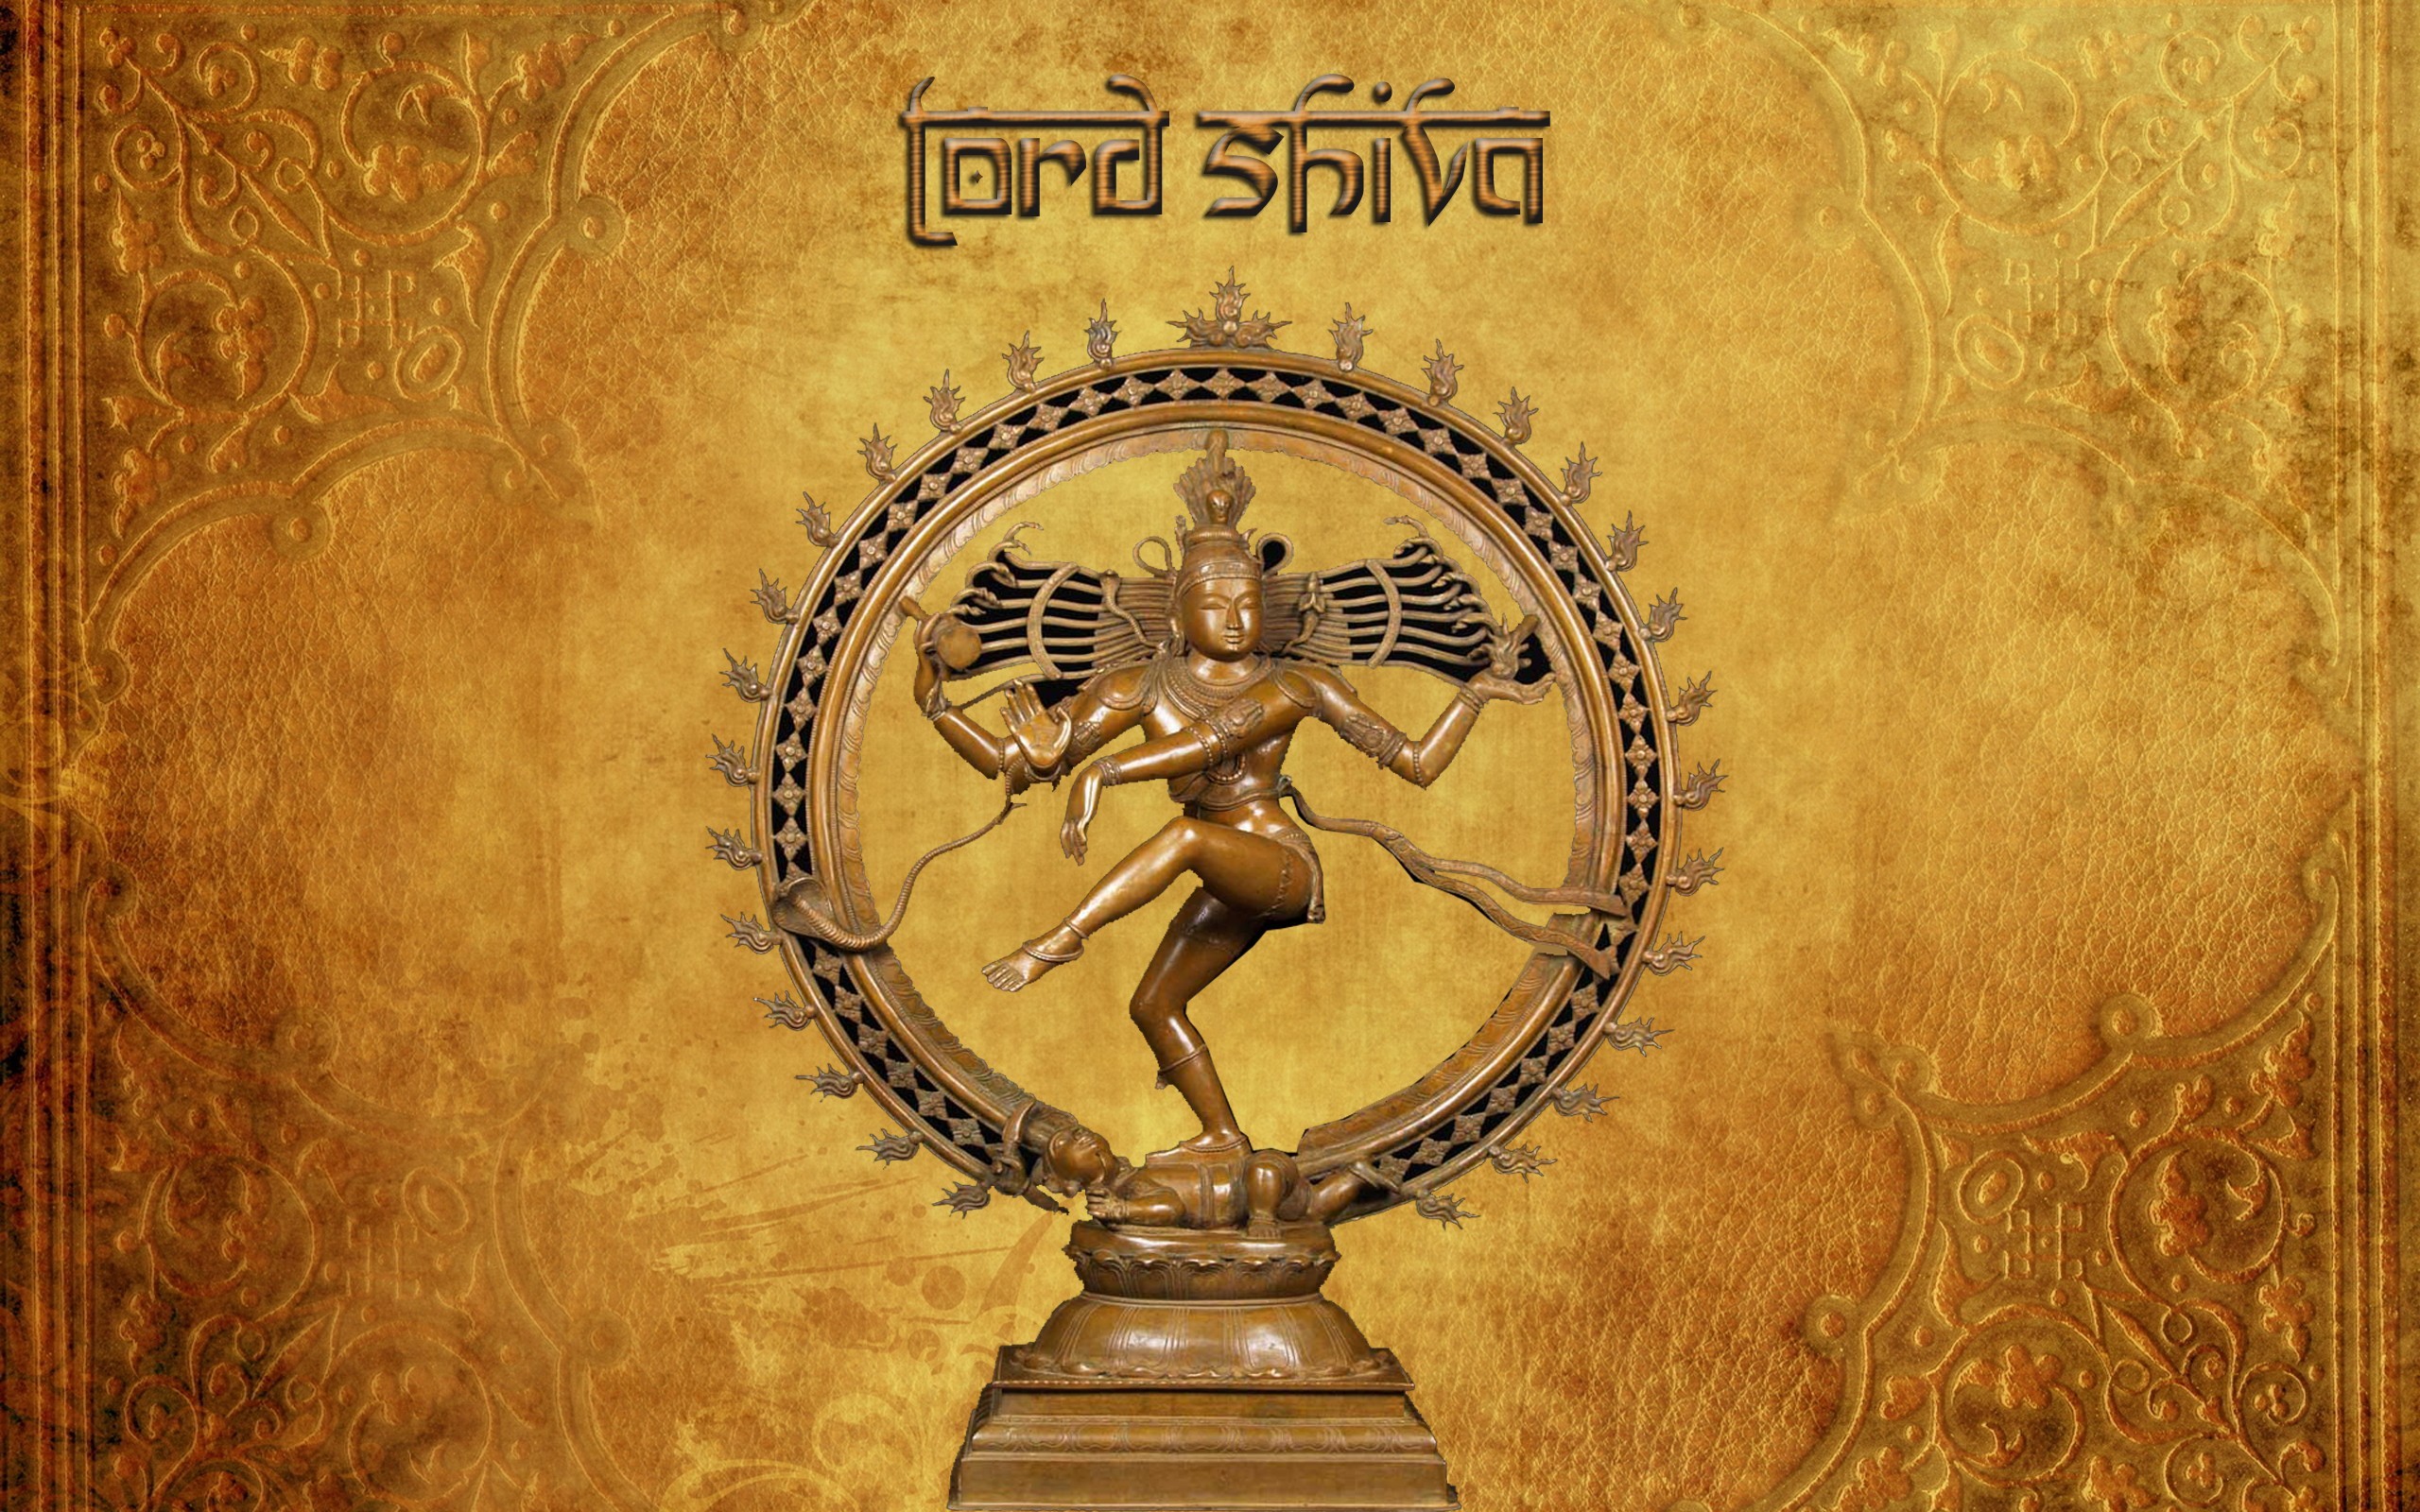 2560x1600 free-download-lord-shiva-wallpaper-nokia-c5.jpg (2560Ã1600) | God |  Pinterest